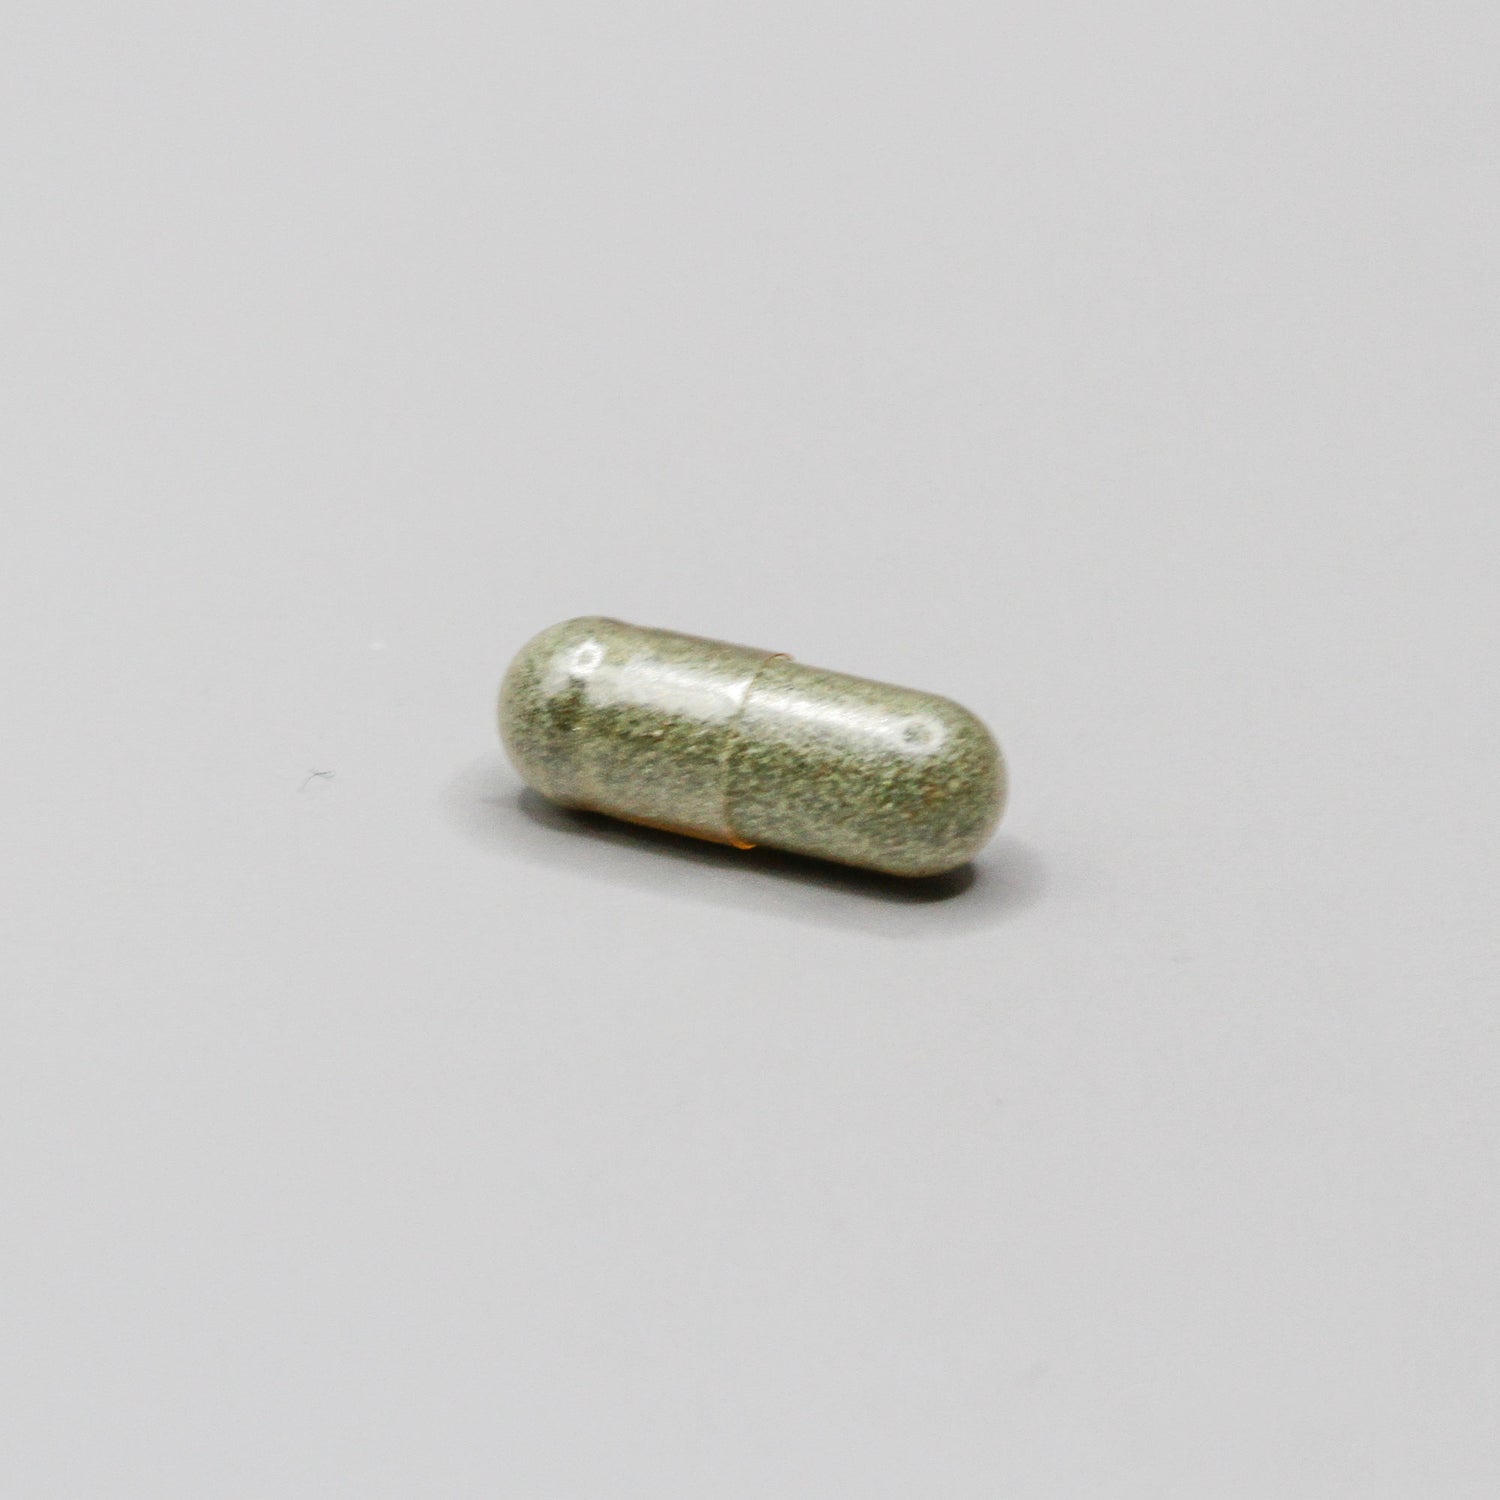 A green pill